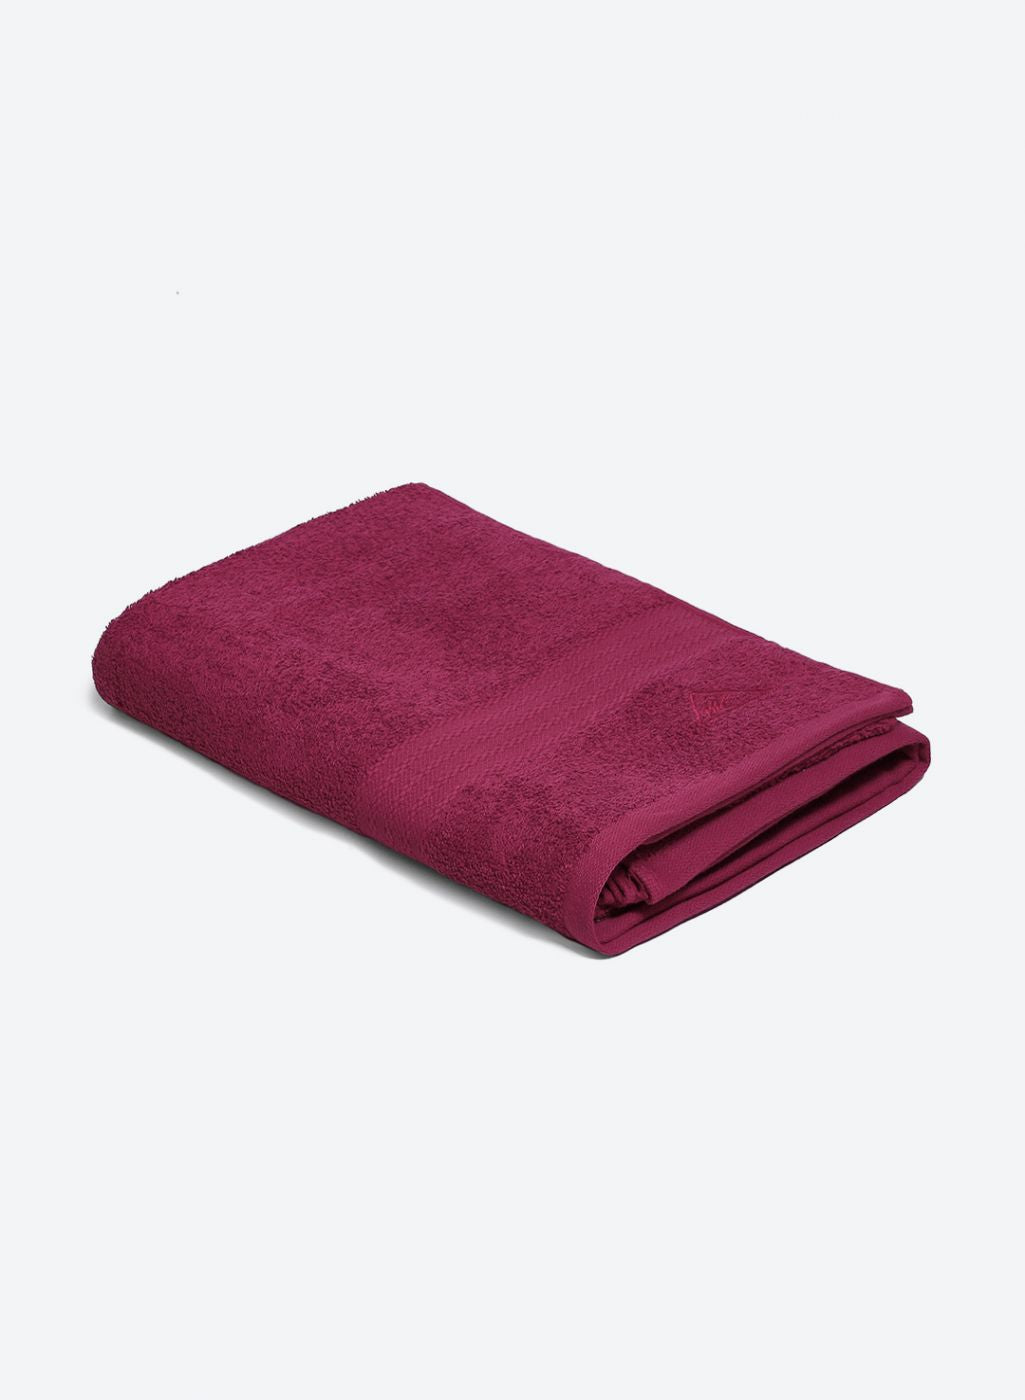 Dark Pink Cotton 400 GSM Bath Towel